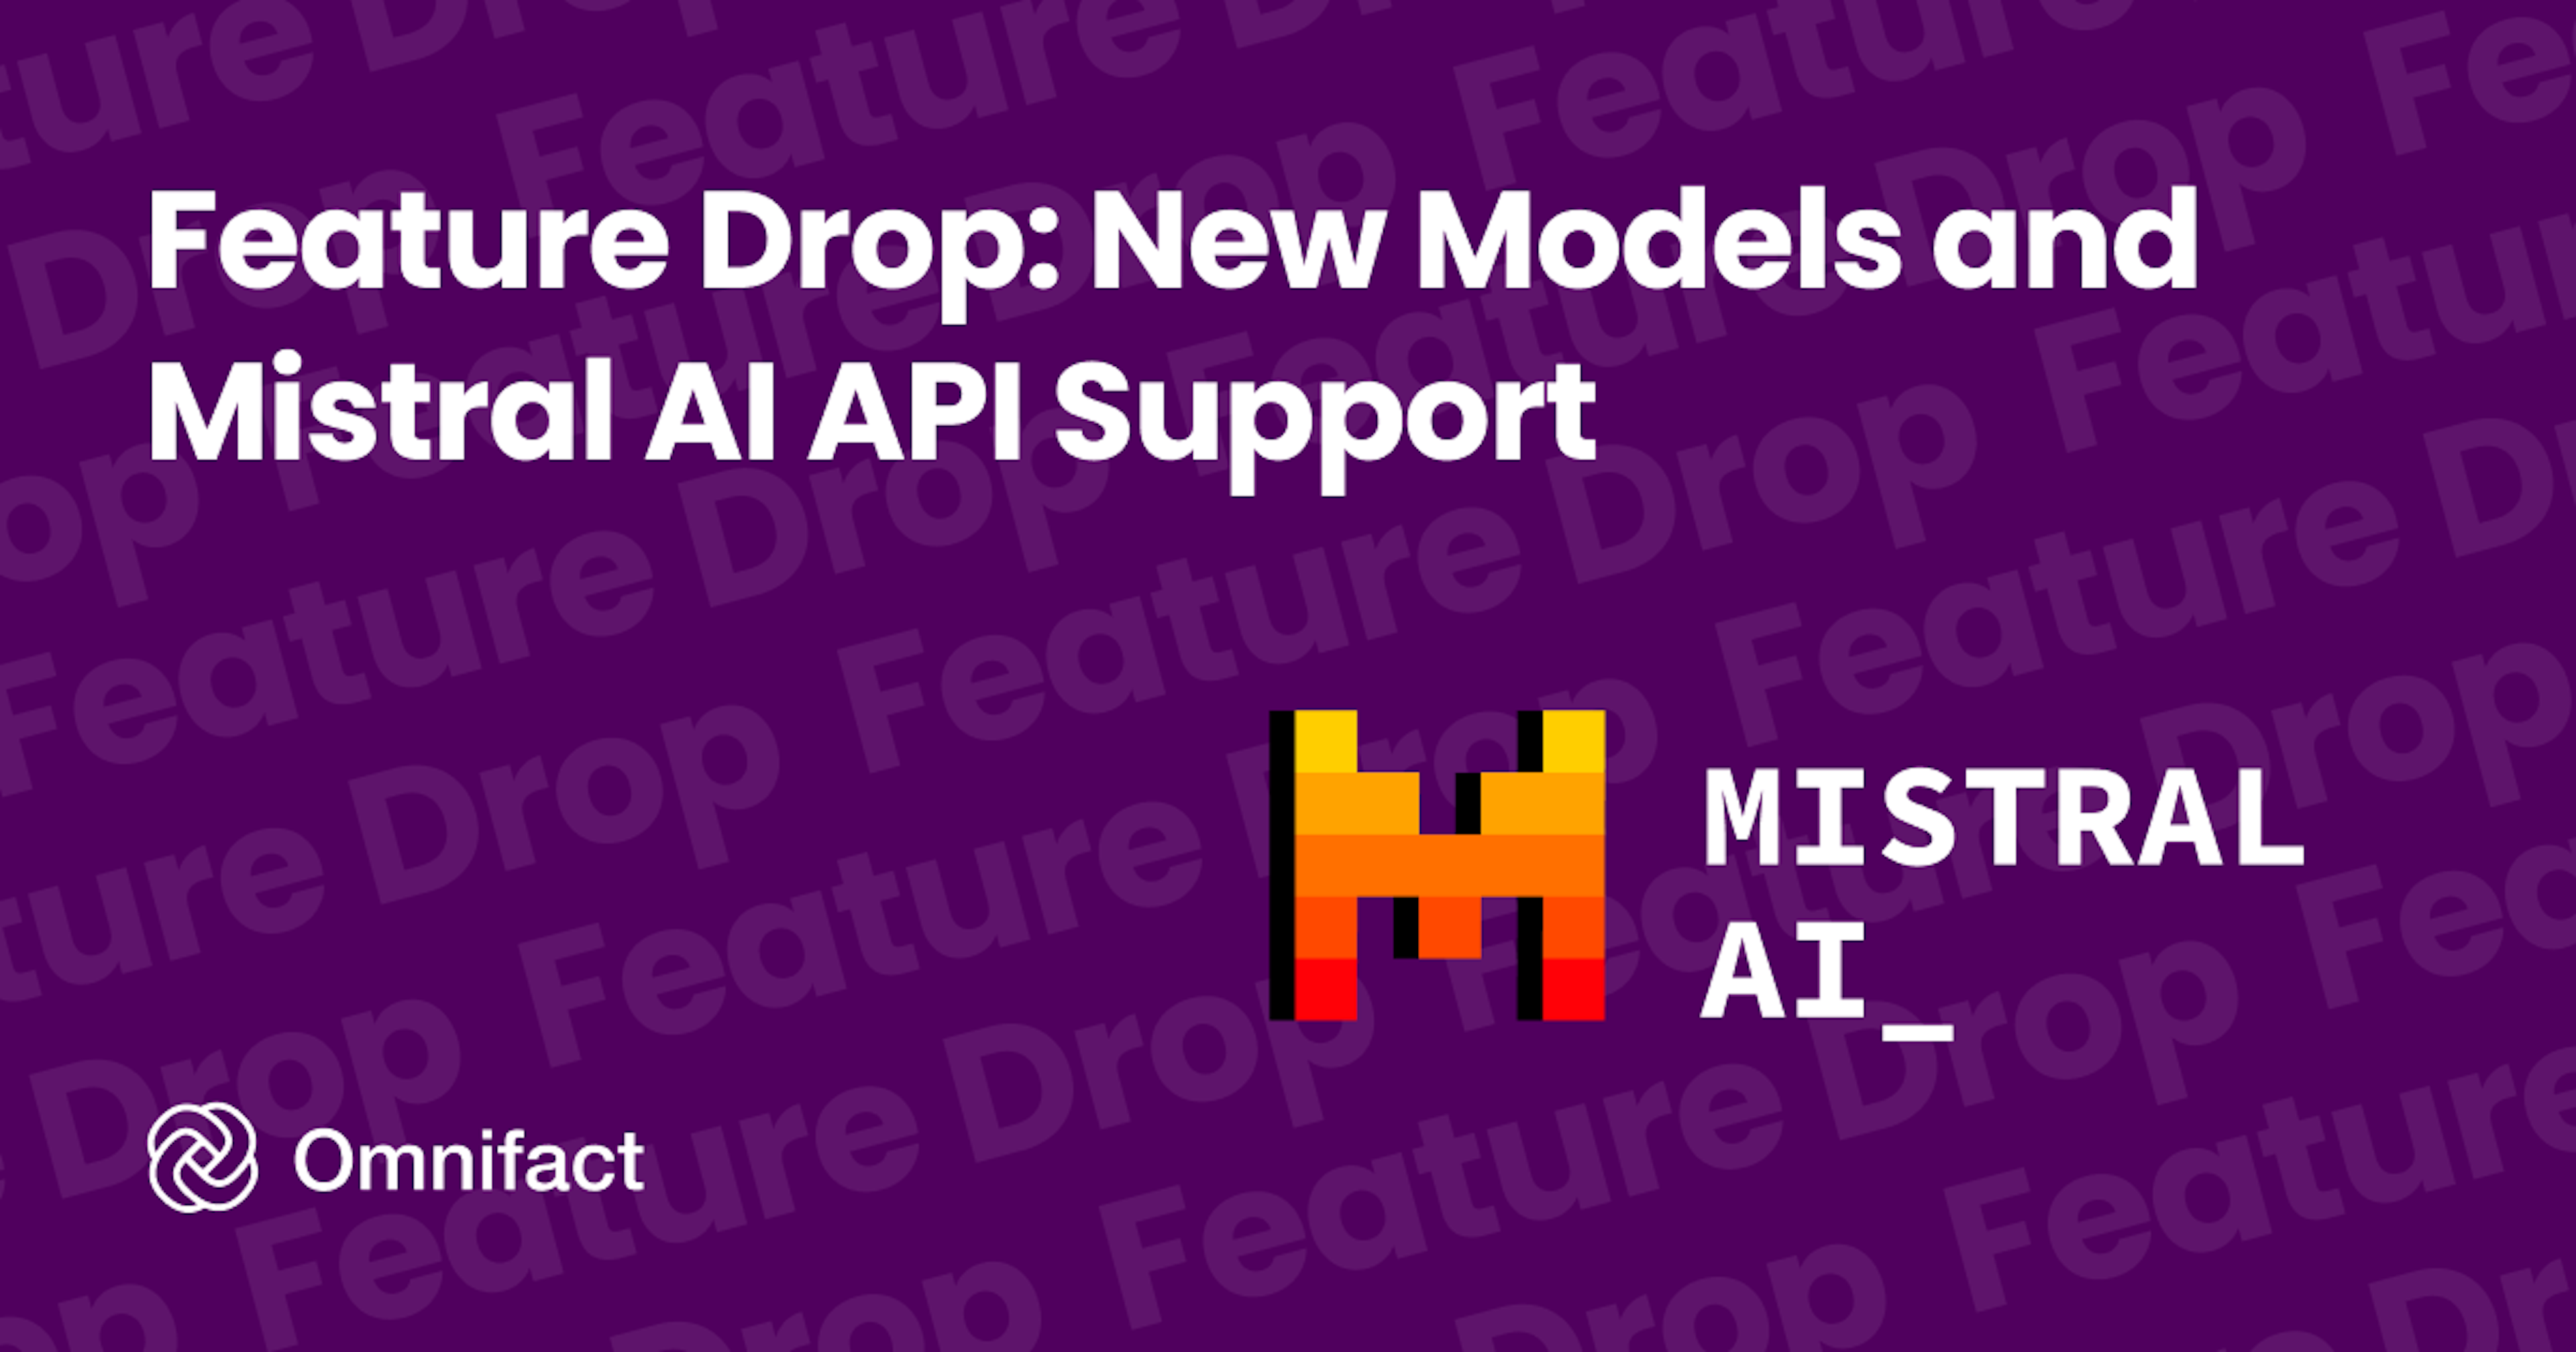 Omnifact unterstützt ab sofort die Mistral AI API Plattform und die dazugehörige Modellfamilie.